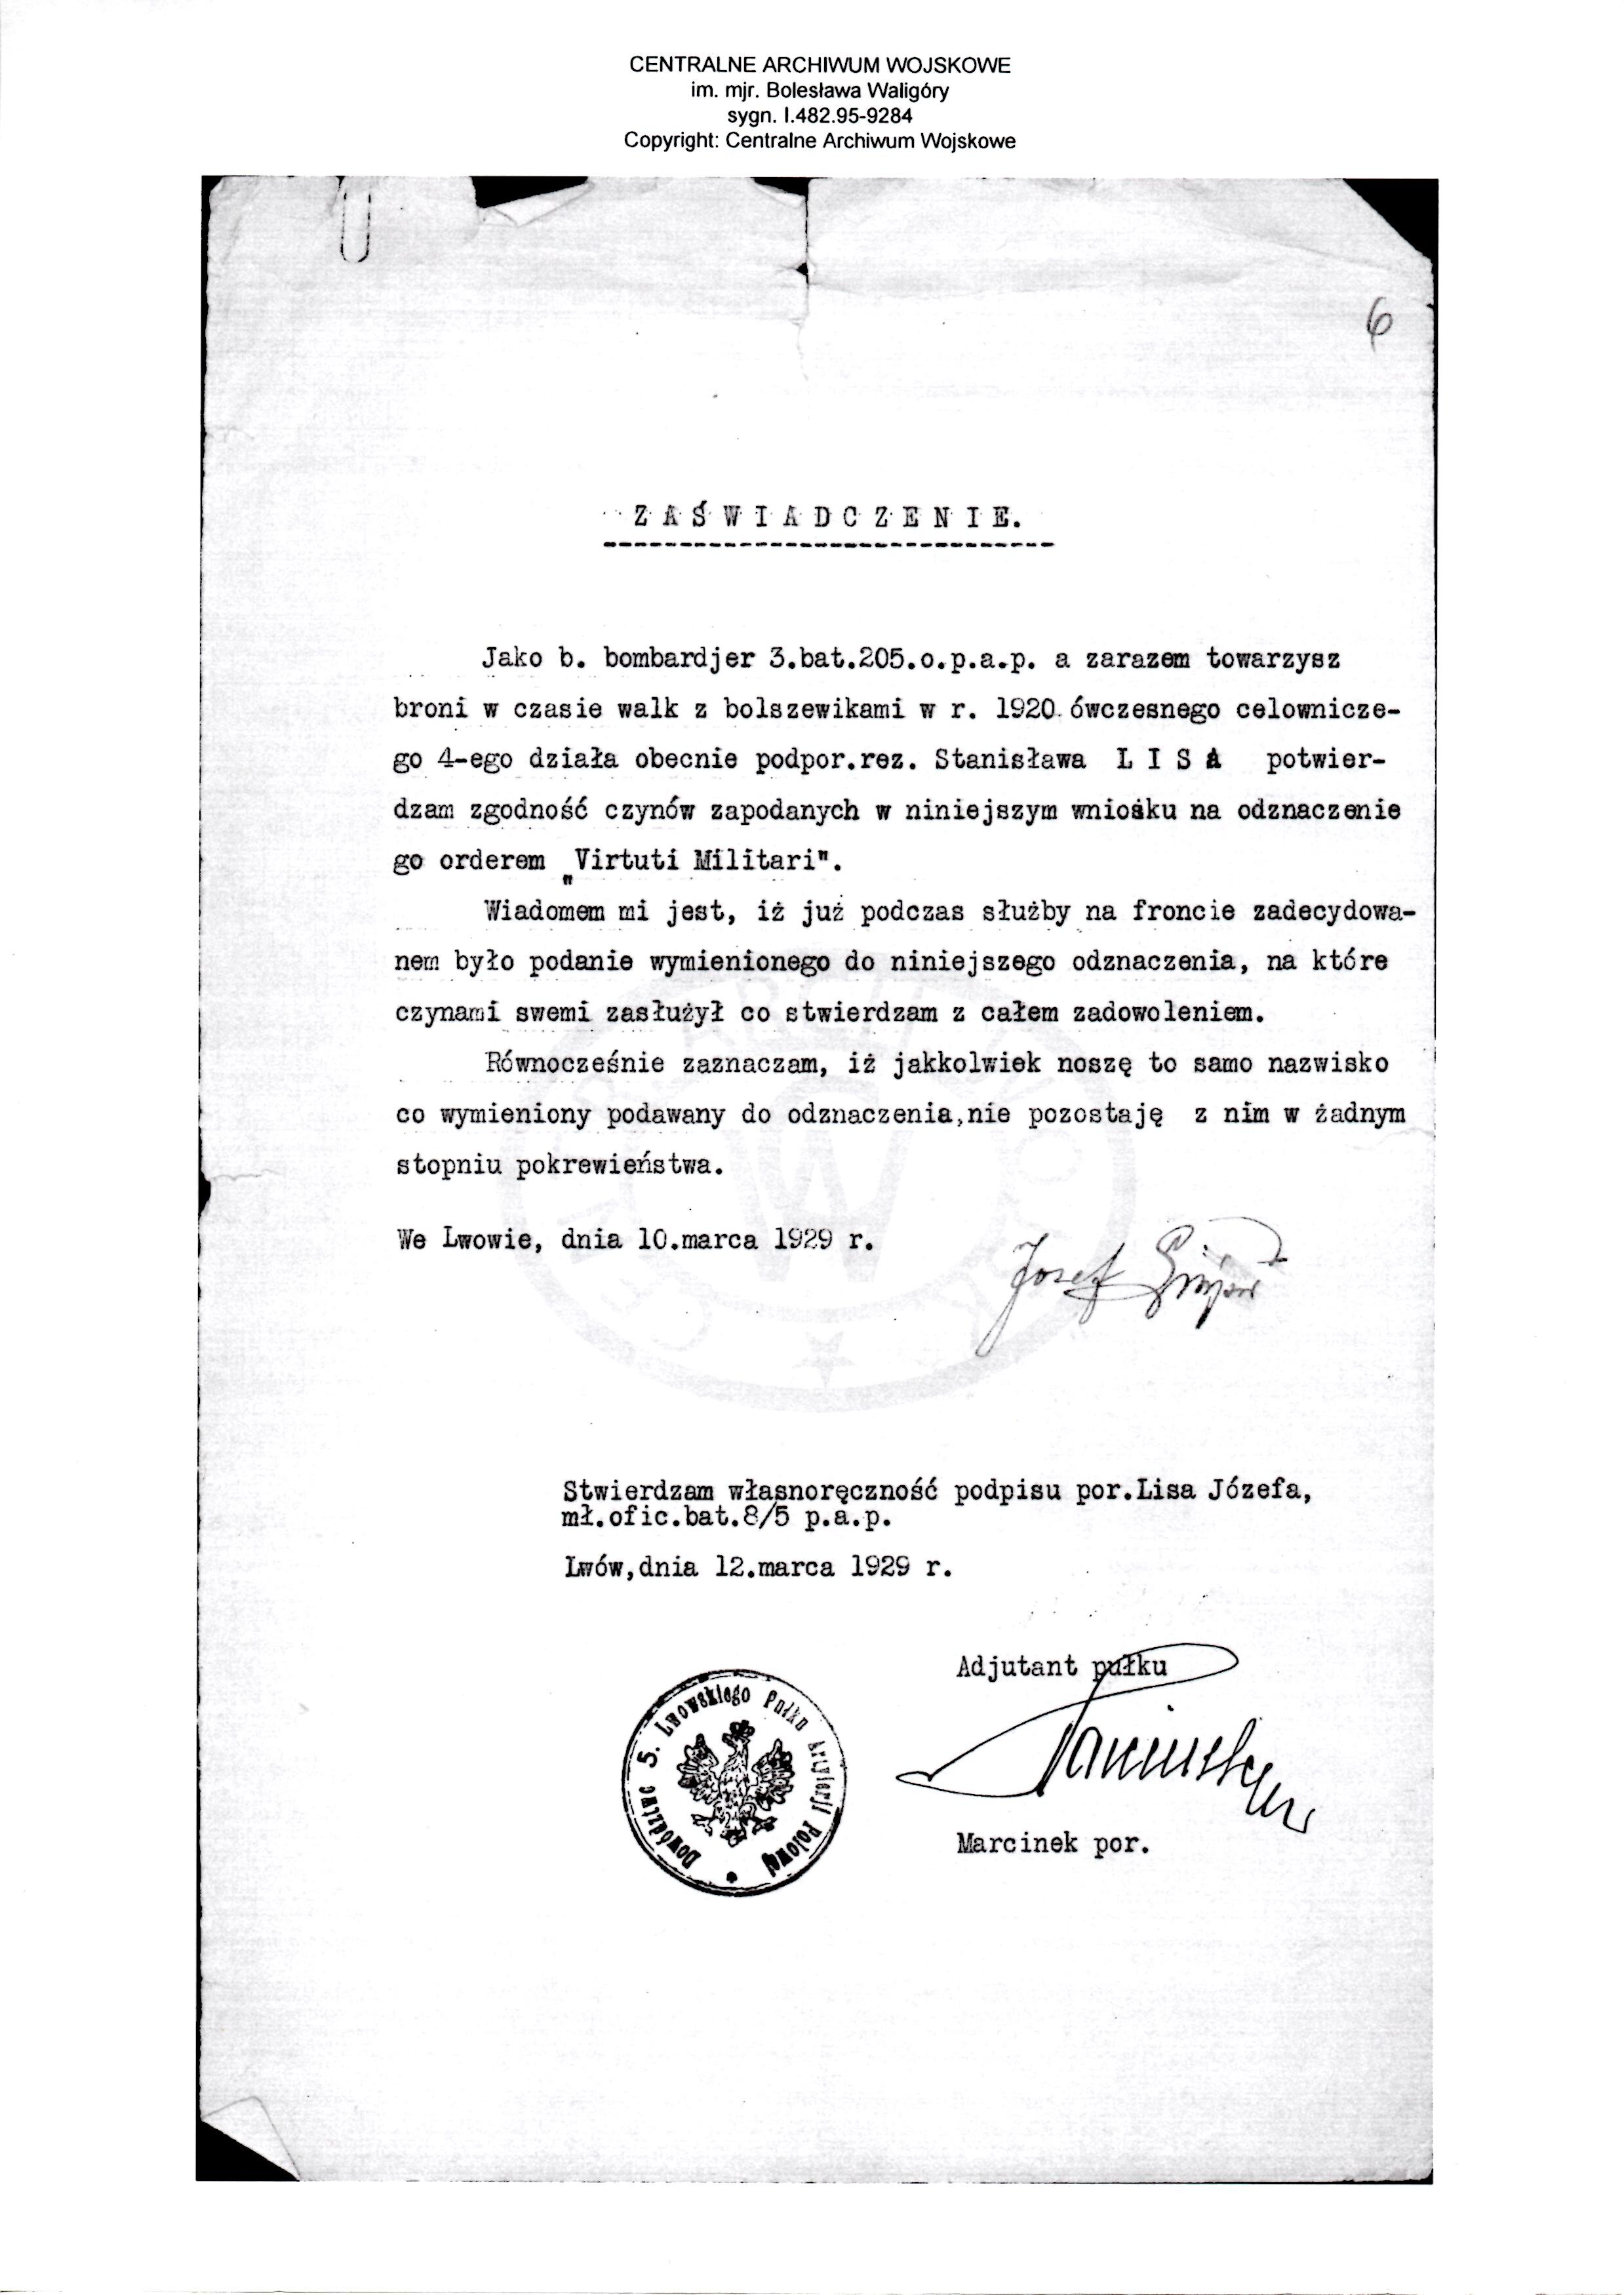 Virtuti Militari Recommendation 12 march 1929.jpg